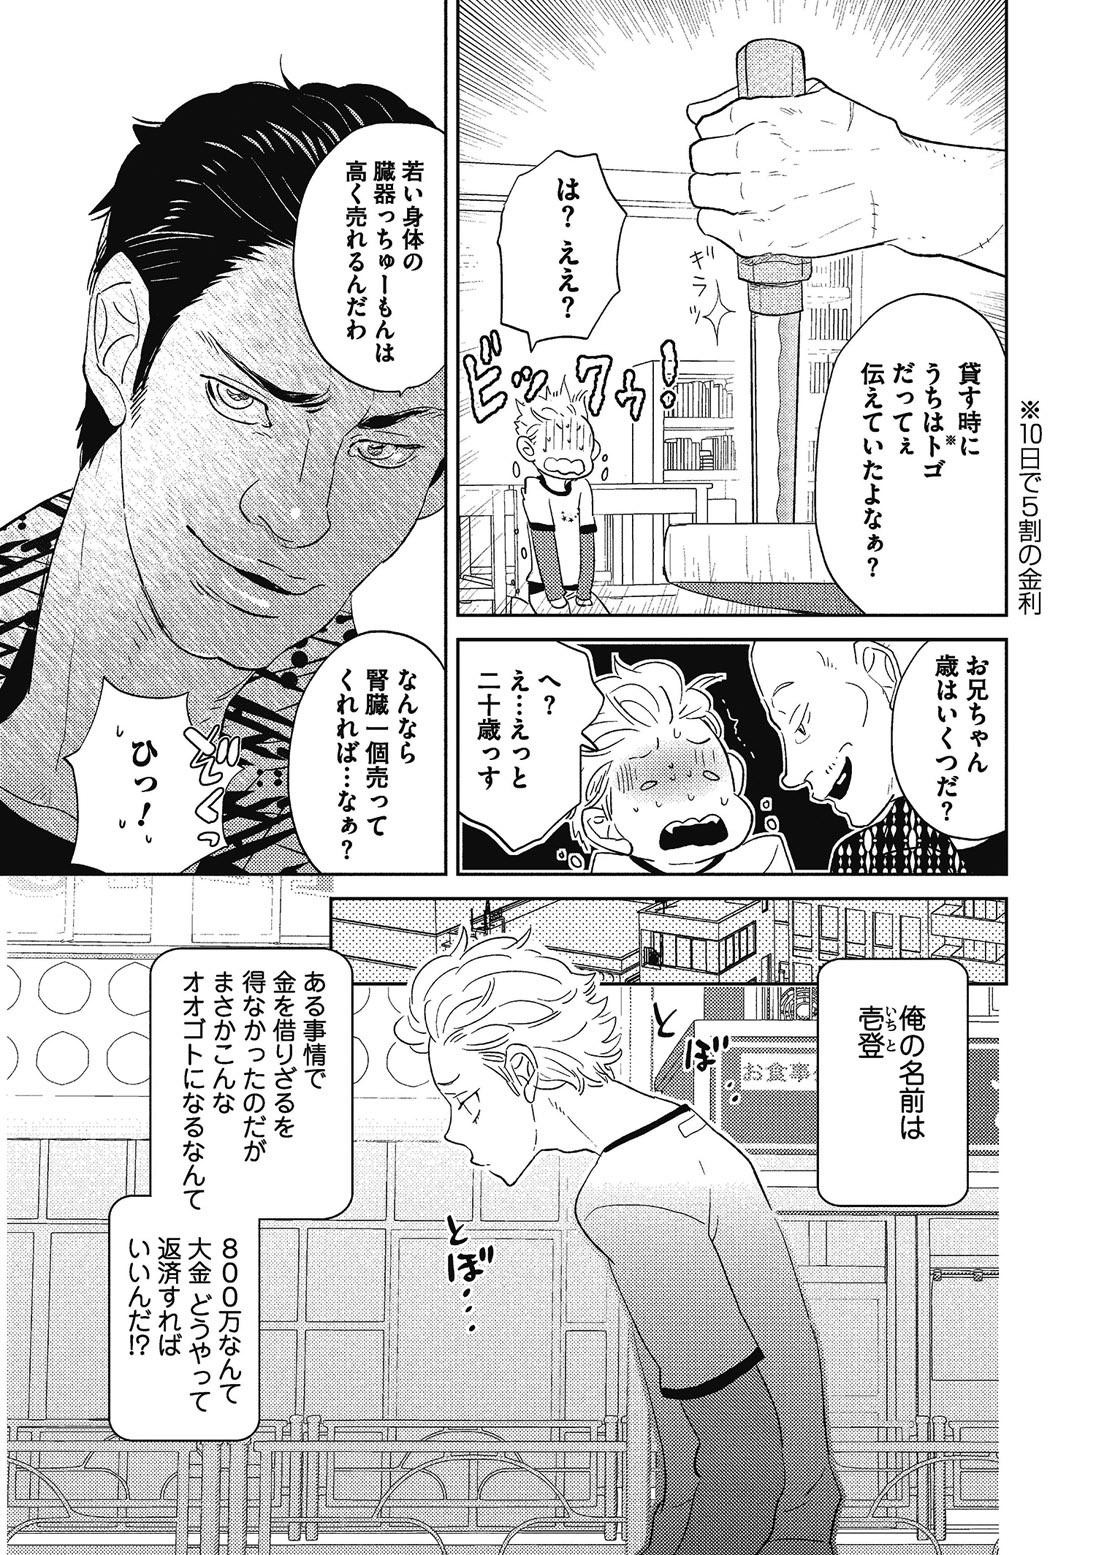 Soft Otokonoko o Suki ni naru no wa Shikata ga nai Peluda - Page 8